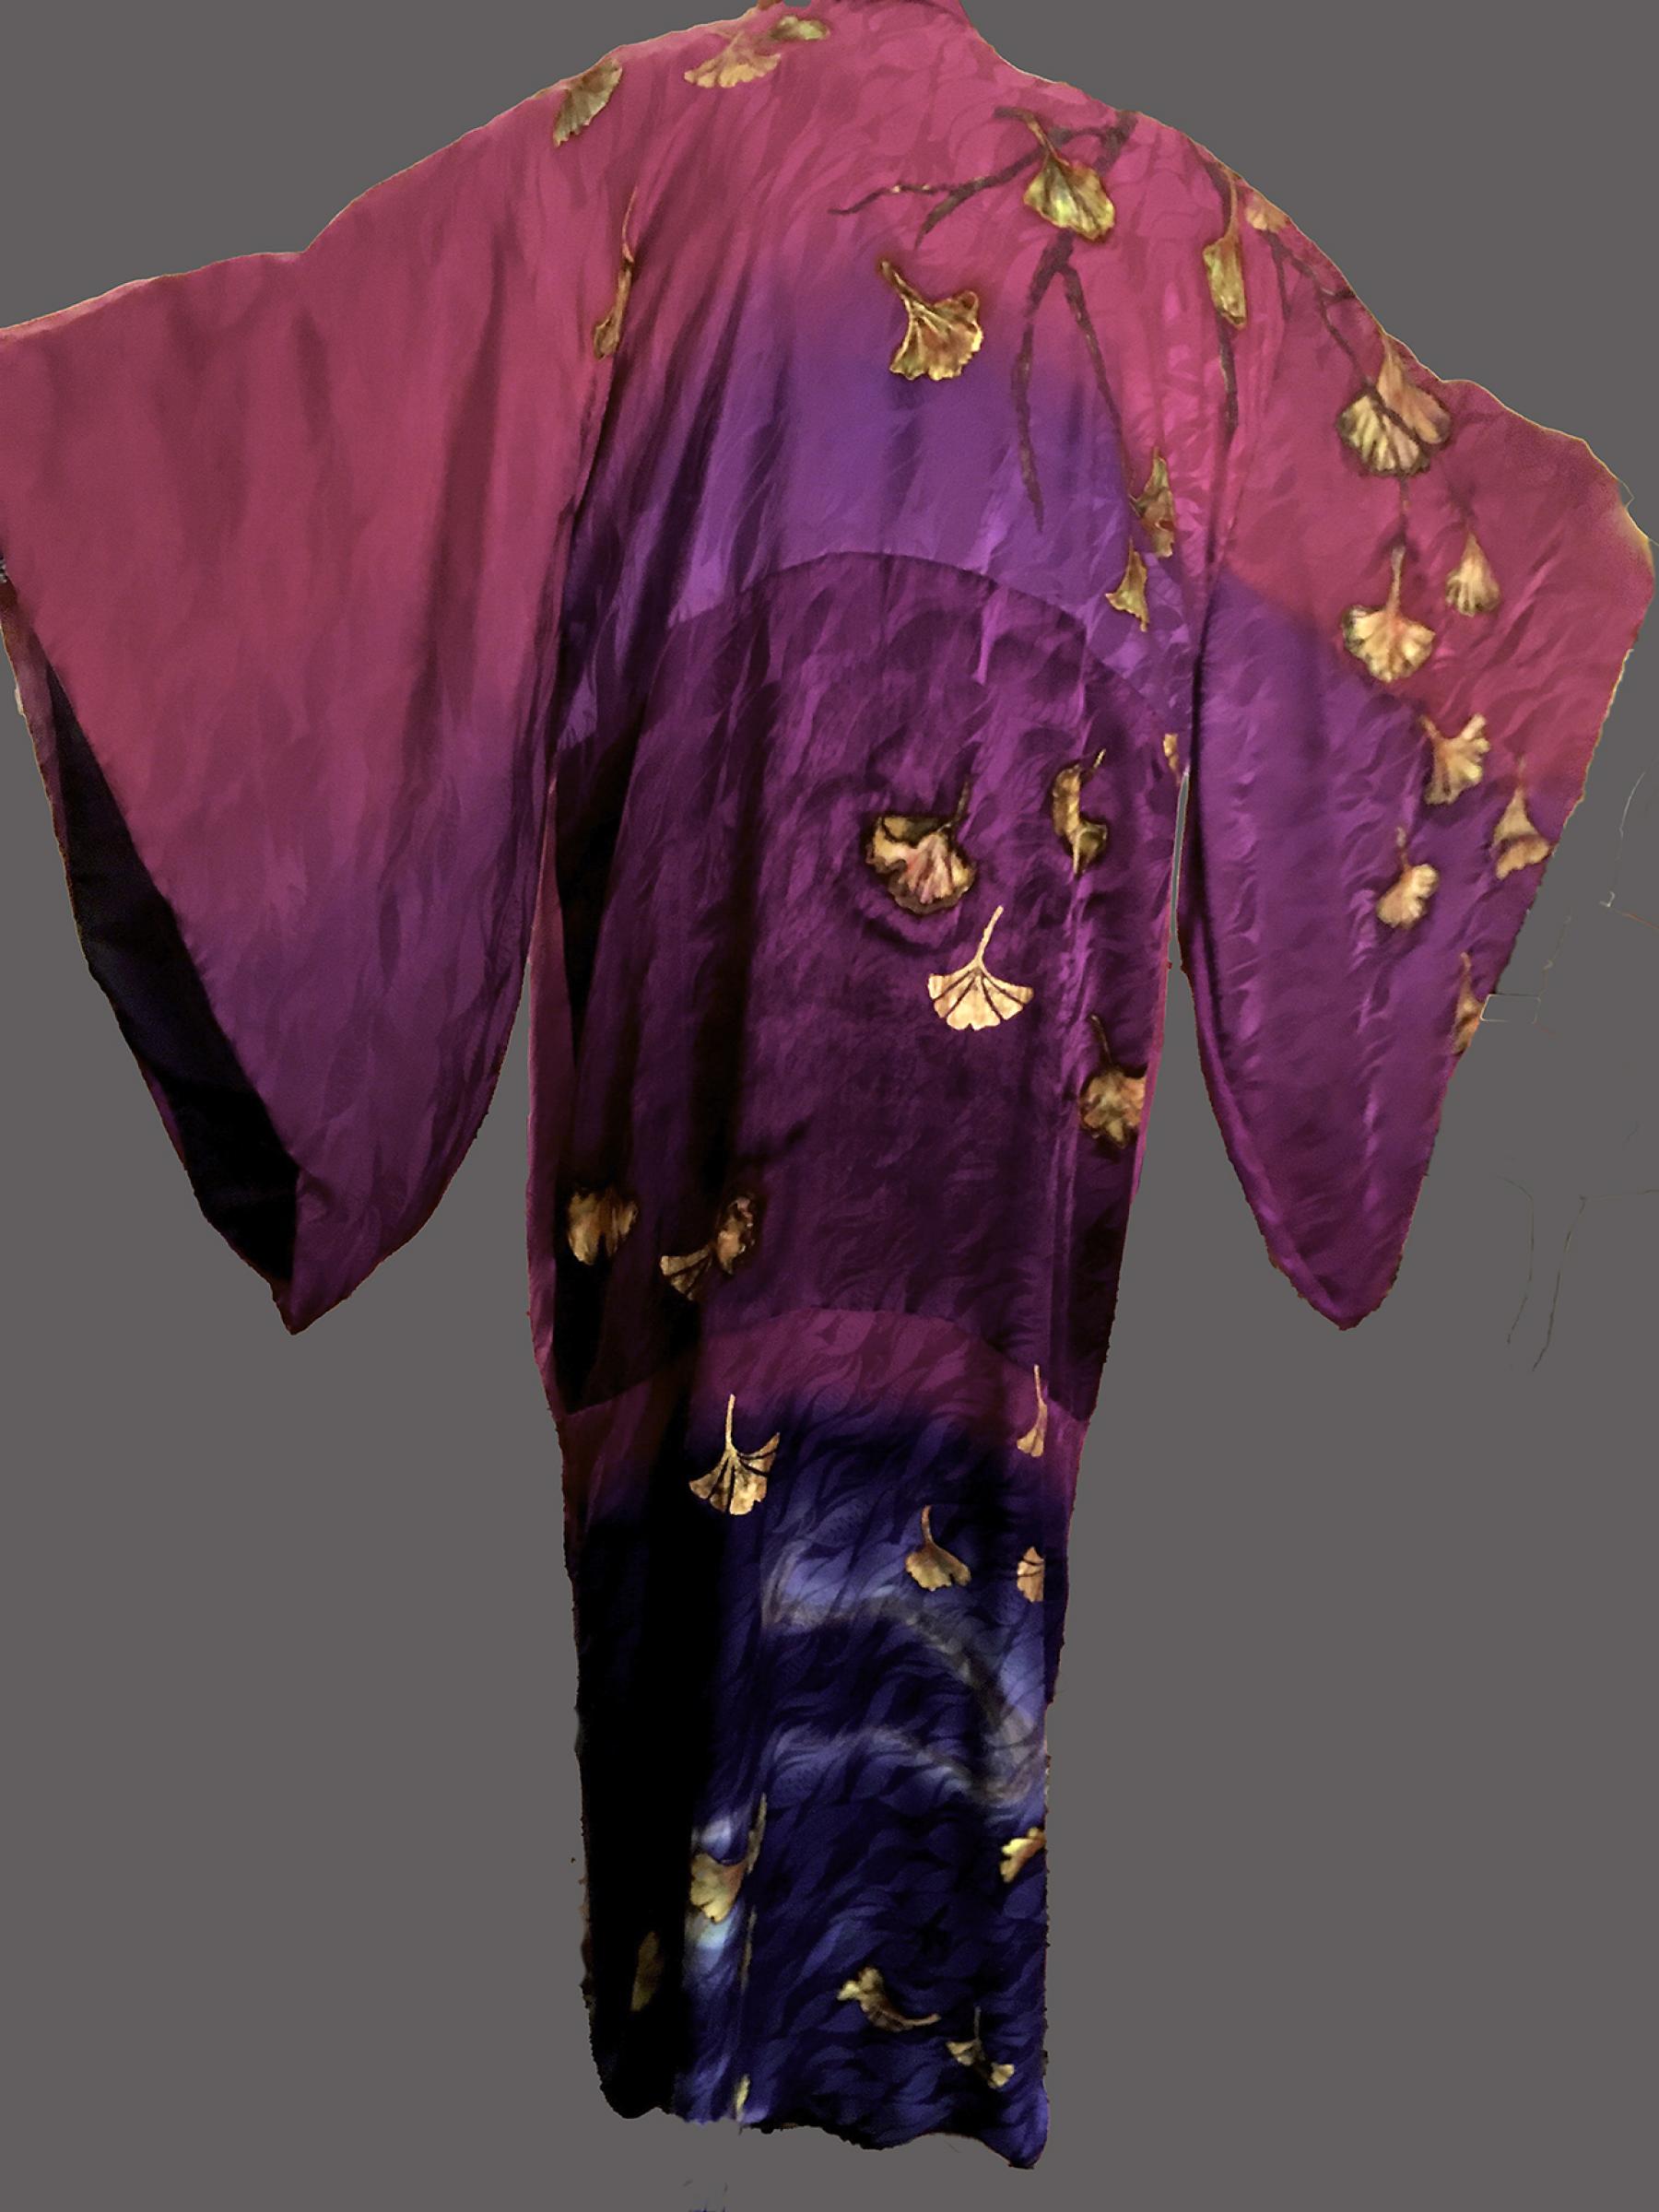 NY Kimono, Honorable Mention